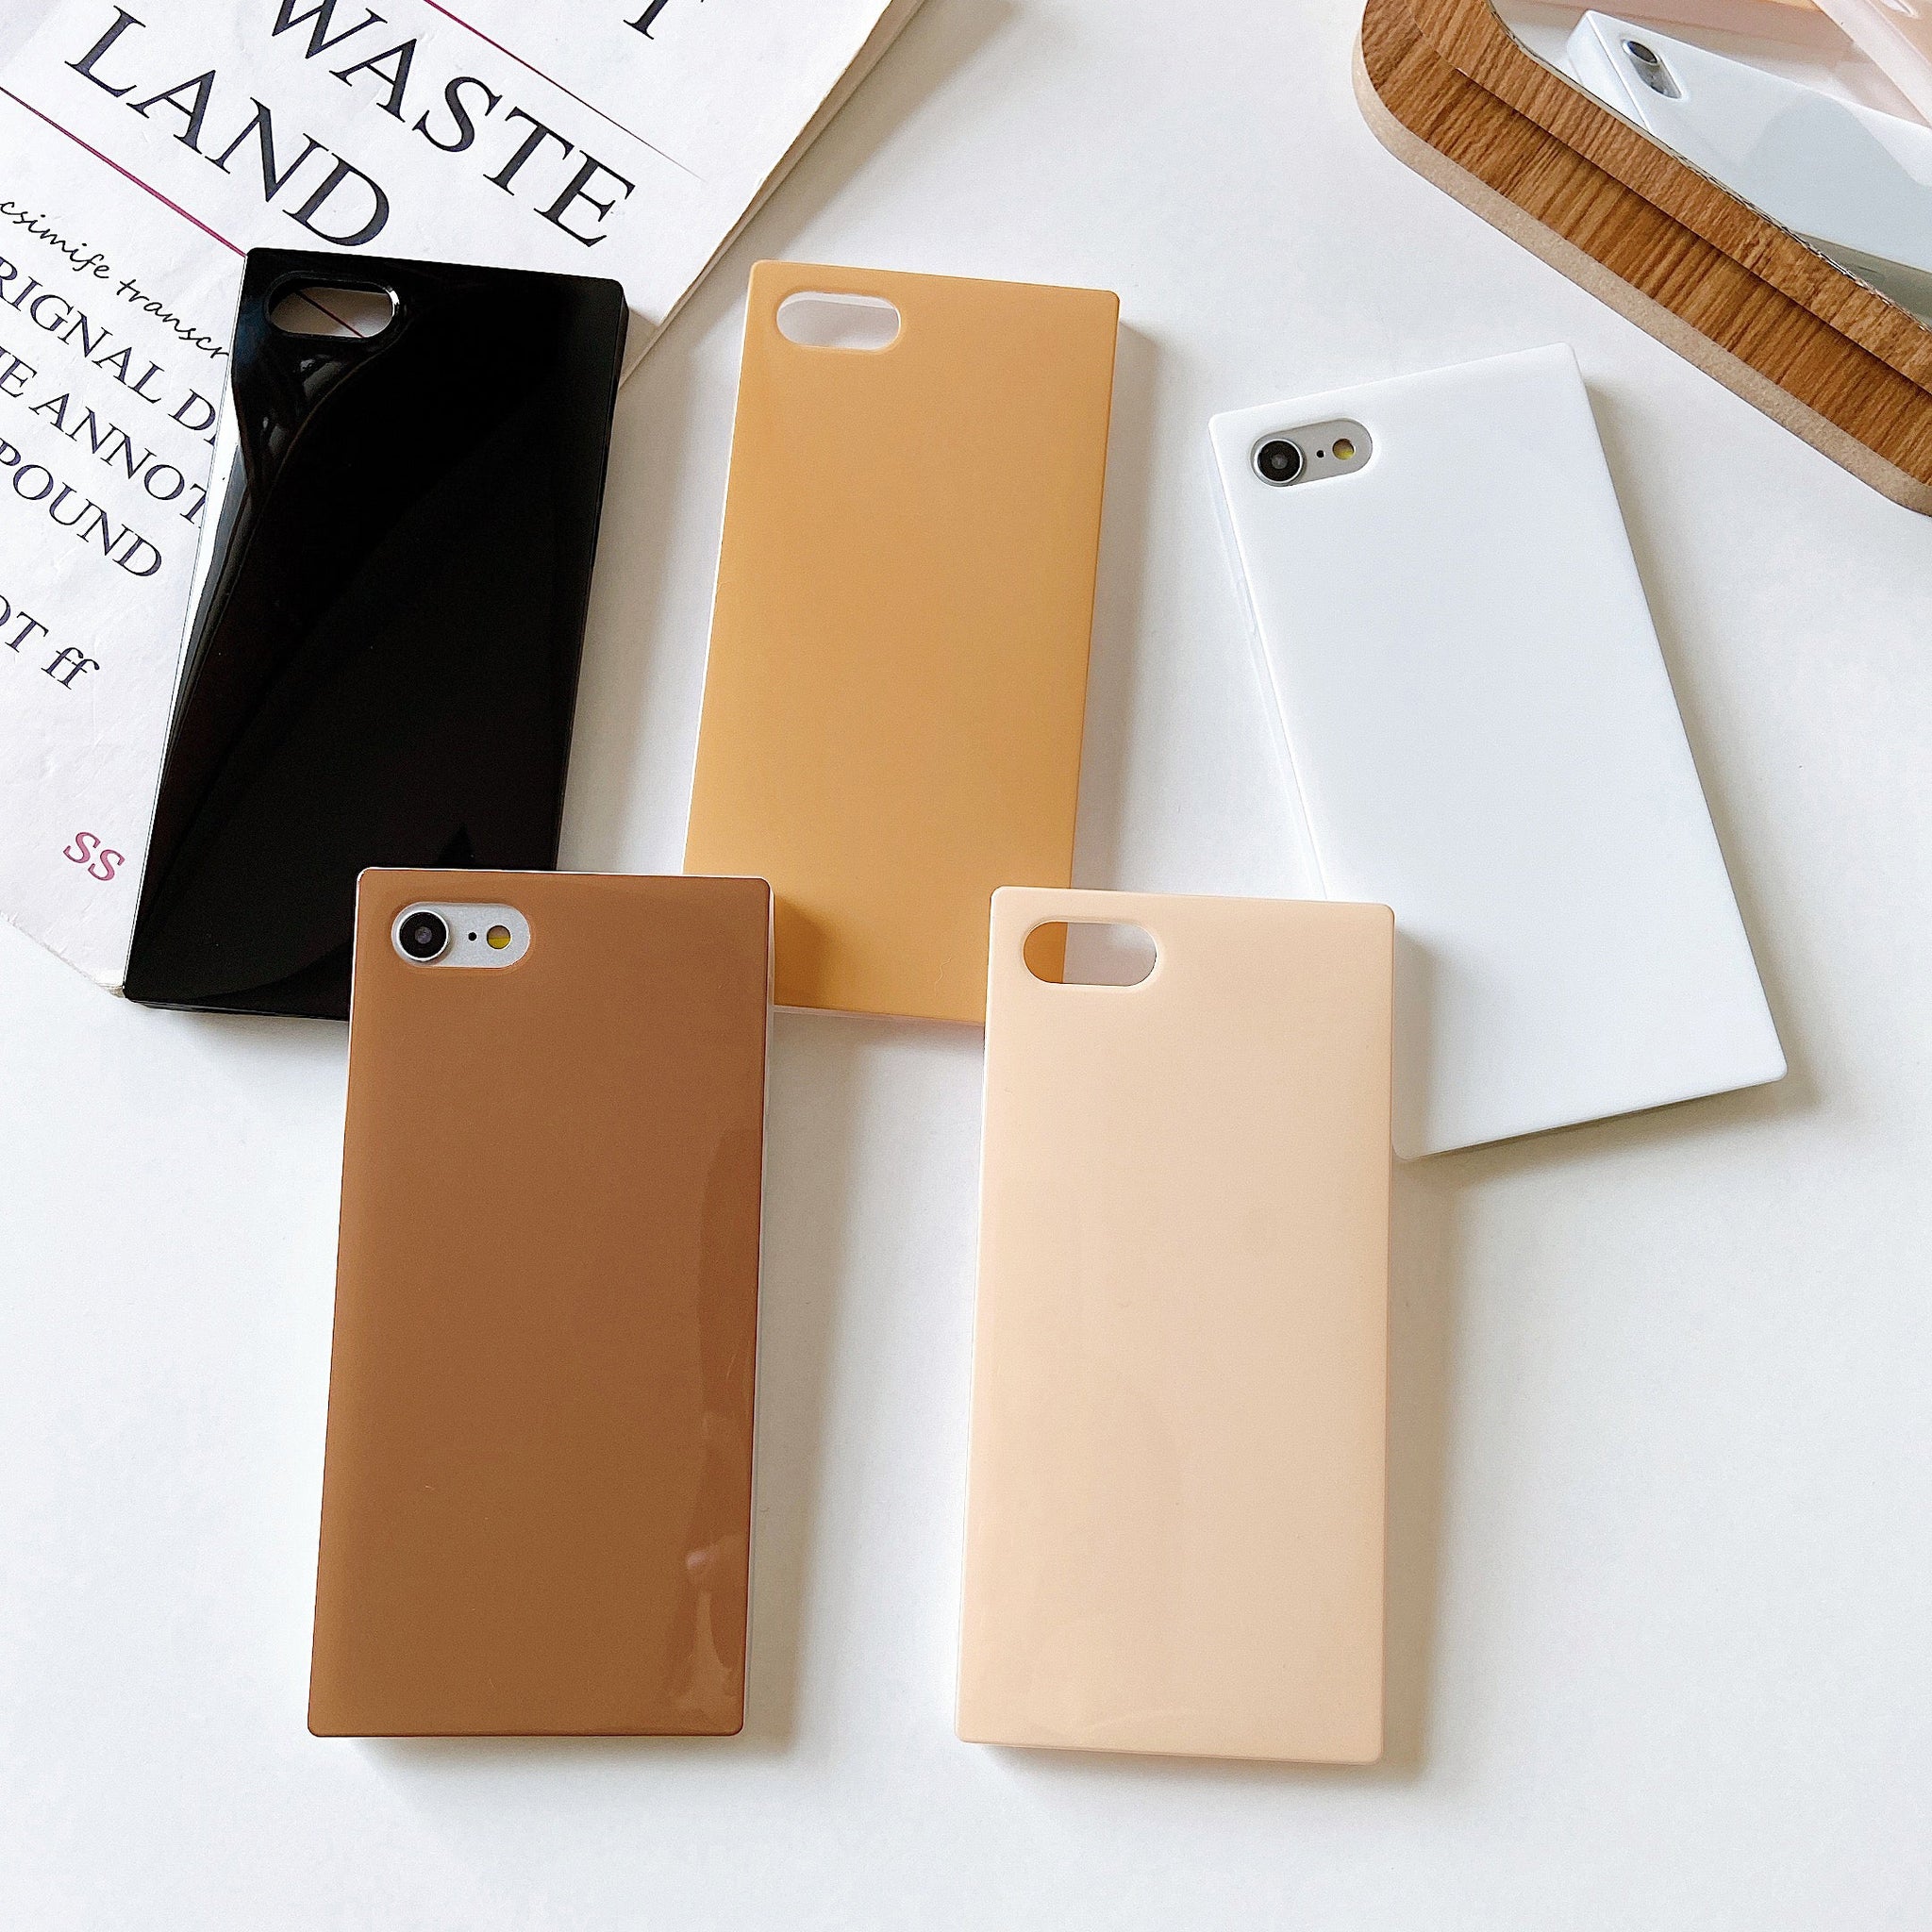 iPhone 8 Plus/7 Plus Case Square Neutral Plain Color (Honey)